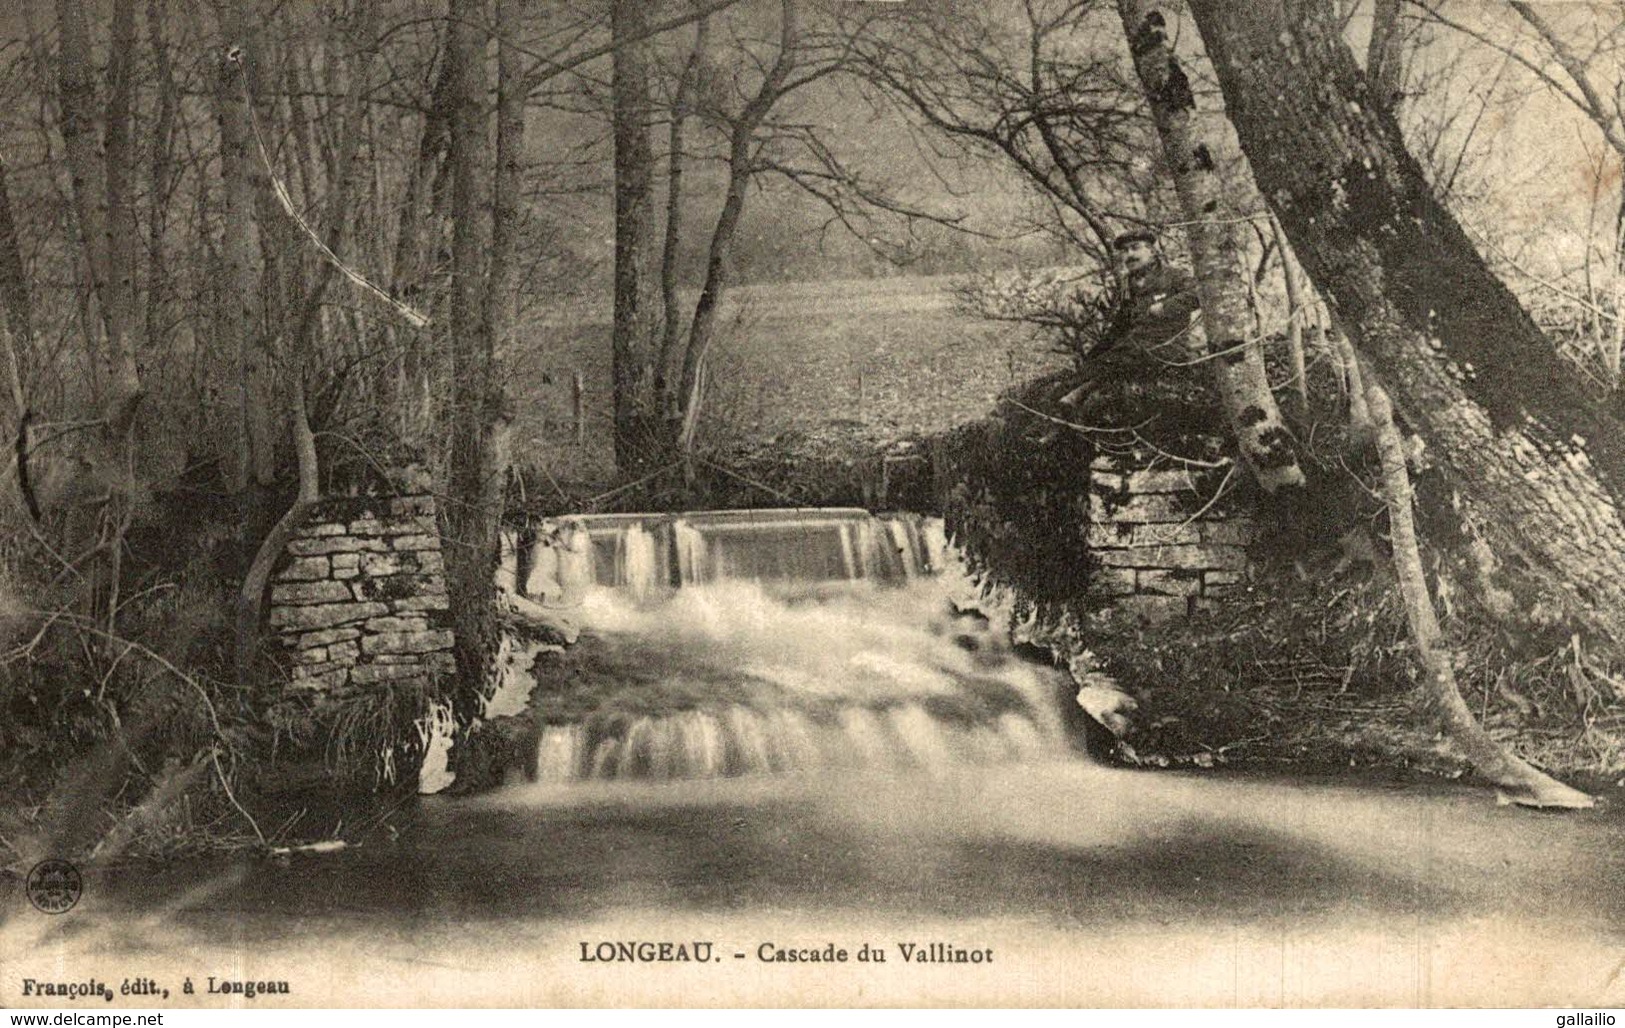 LONGEAU CASCADE DU VALLINOT - Le Vallinot Longeau Percey